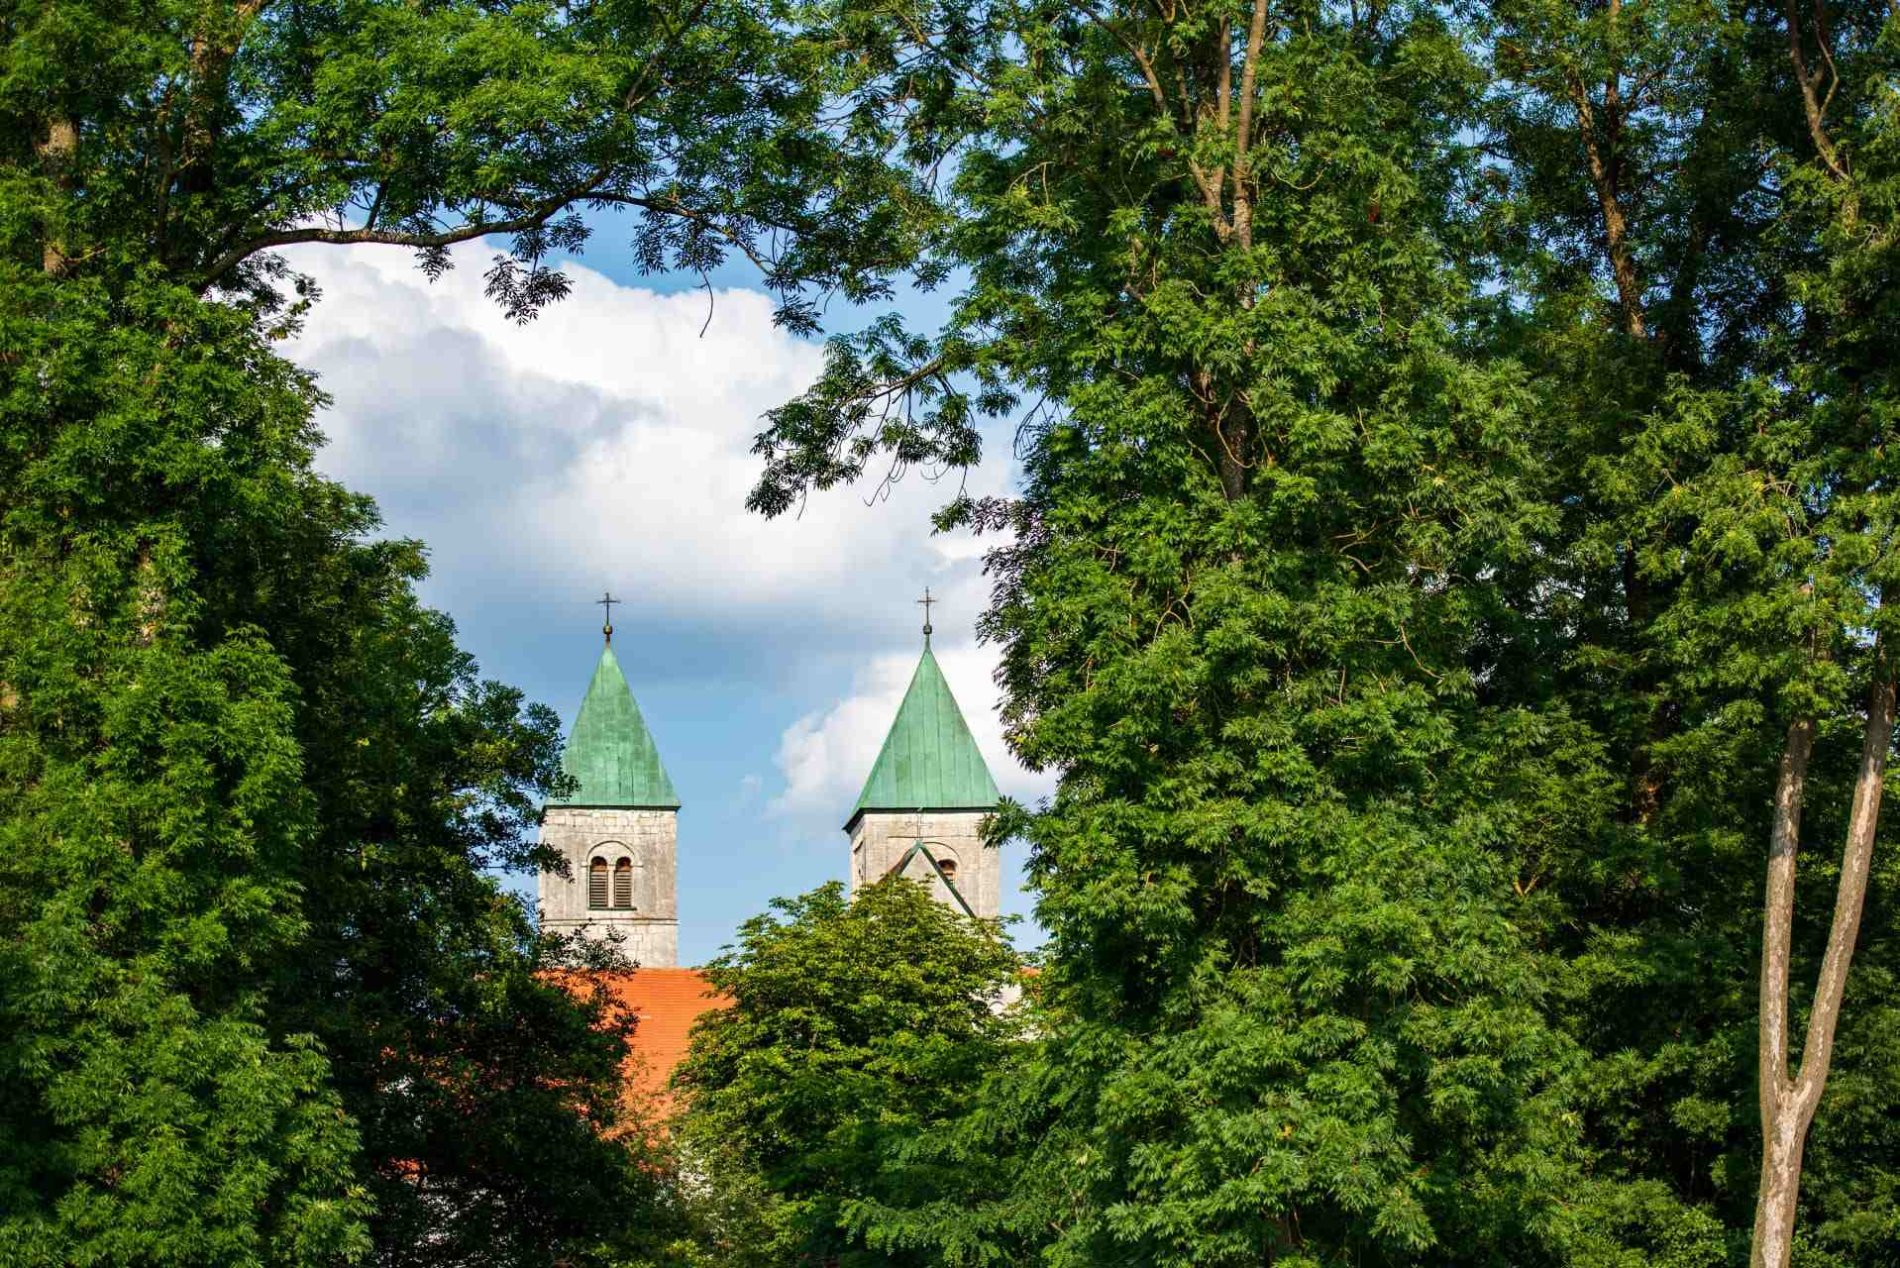 Durch die Bäume sieht man die Kirchtürme der ehemaligen Klosterkirche in Biburg.